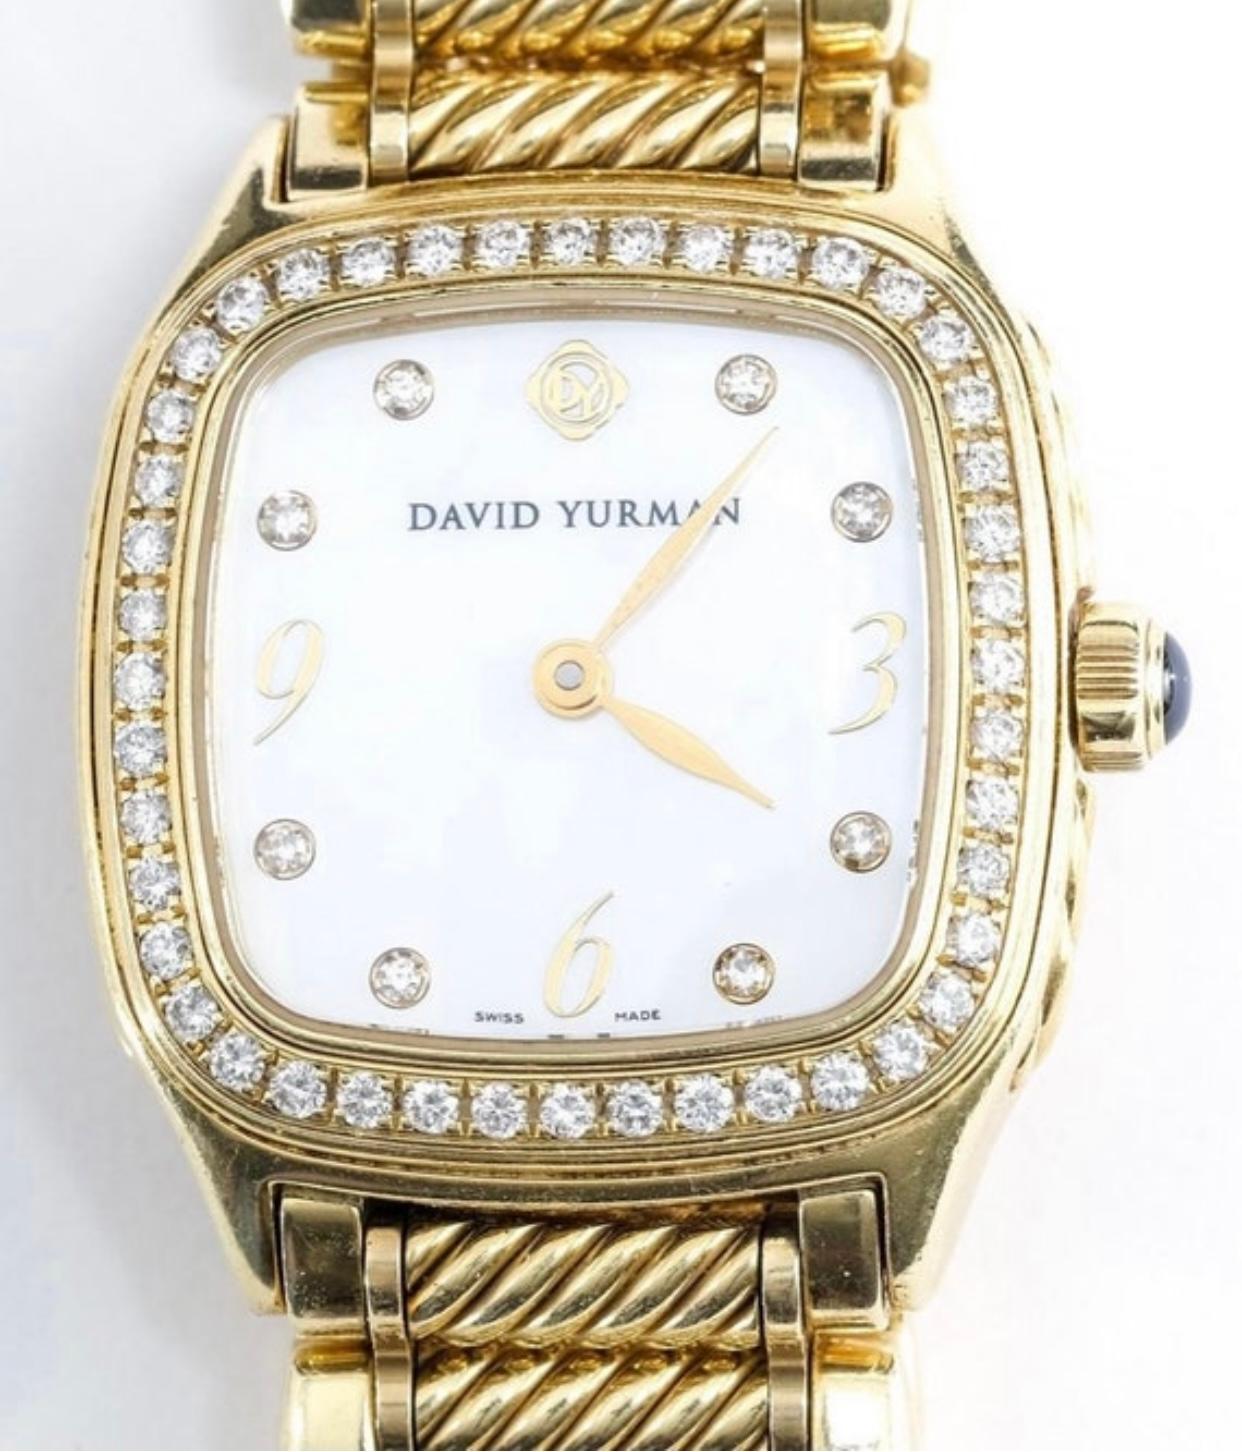 Authentische 18k Gold & Diamant David Yurman Frauen Thoroughbred Uhr.

Gehäuse und Armband aus 18 Karat Gelbgold, besetzt mit über 50 runden Brillanten. 

Perlmutt-Zifferblatt, diamantbesetzte Indexe und DY-Logo auf der 12-Uhr-Position. 

25 mm